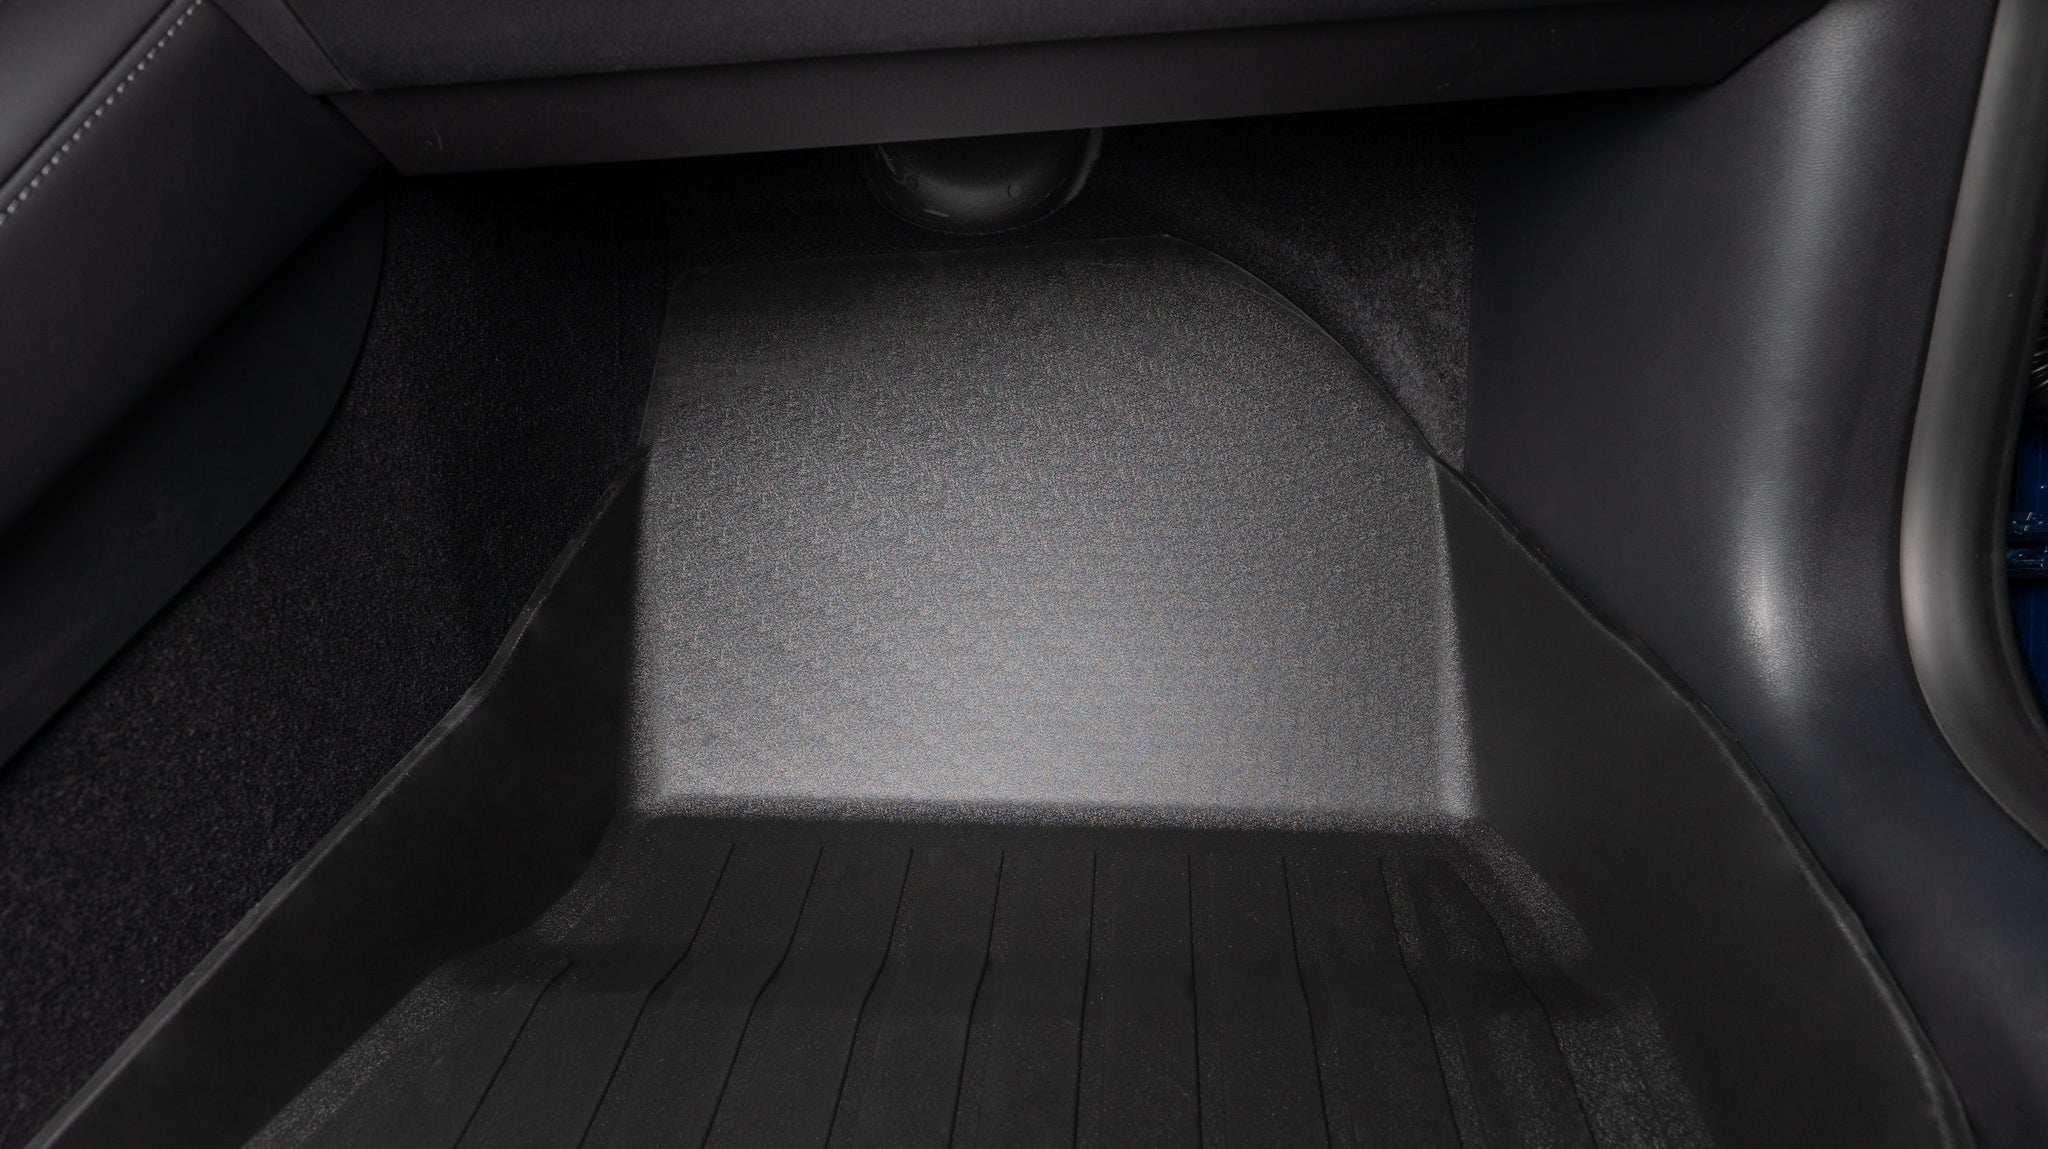 2befair rubberen matten complete set voor de Tesla Model 3